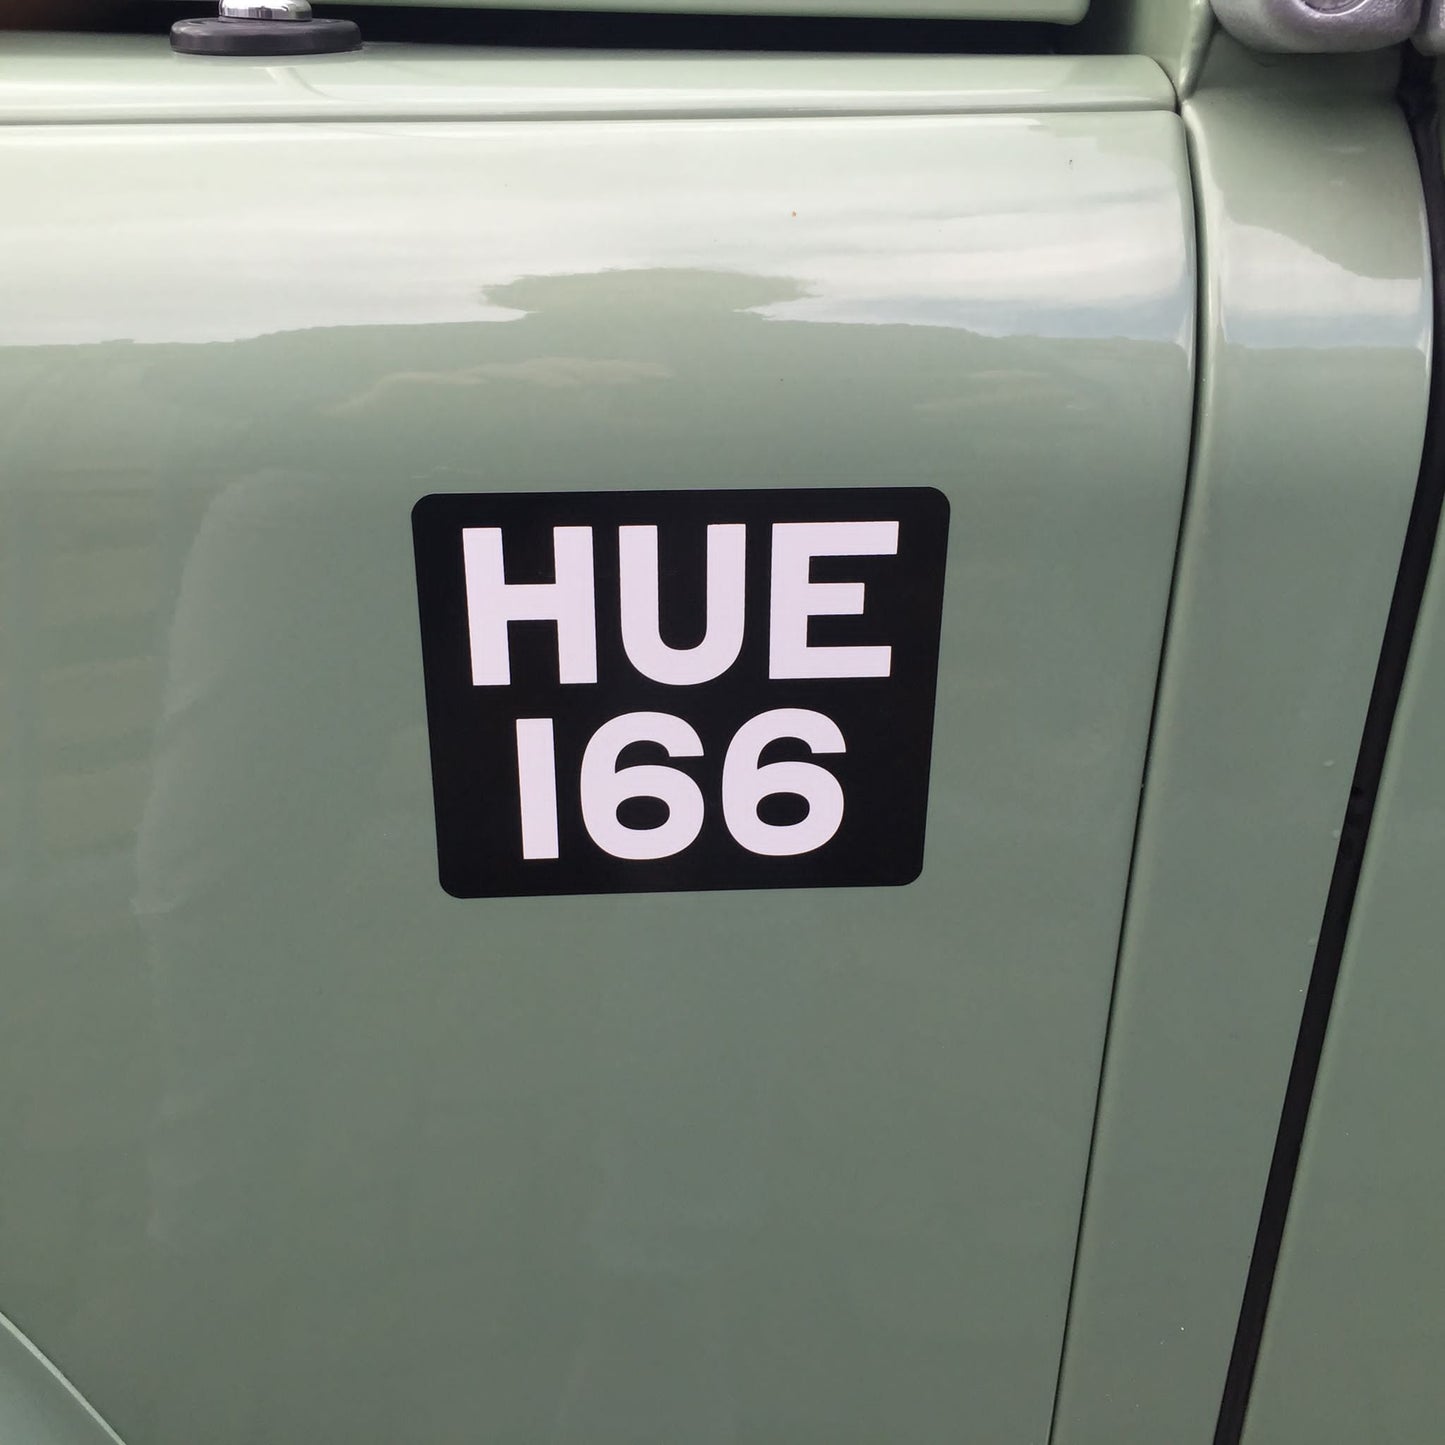 Land Rover Defender Heritage HUE166 90 TD4 2016